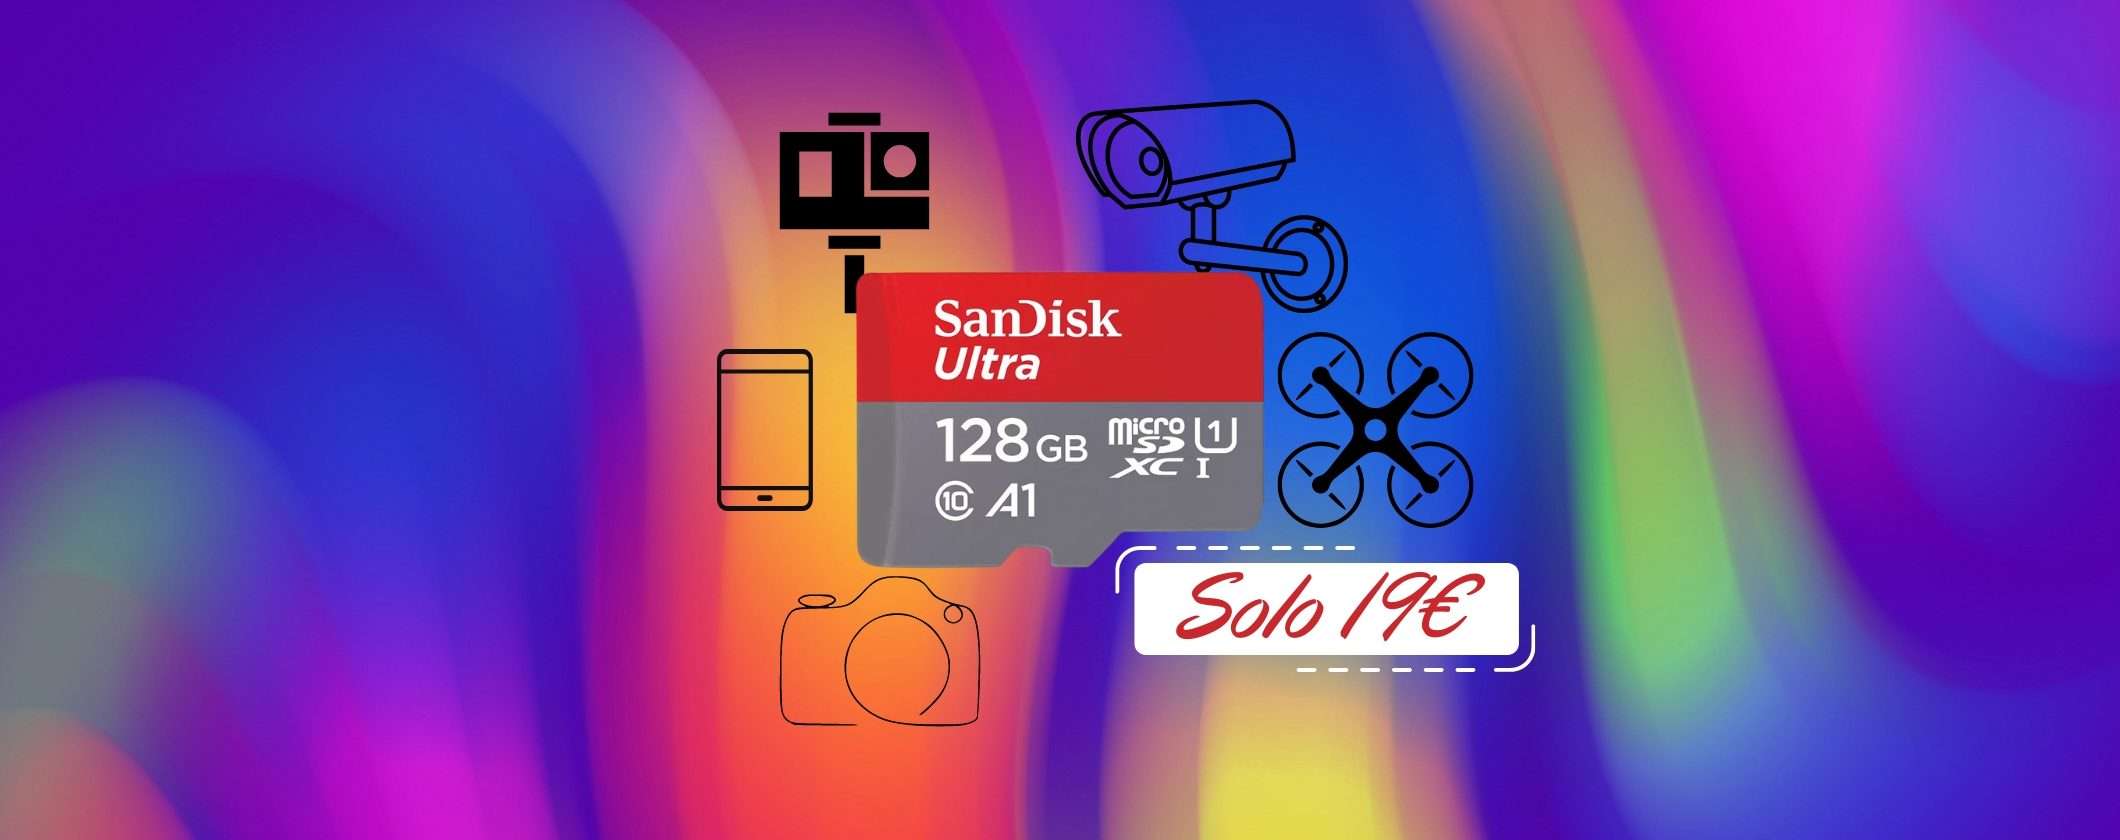 MicroSD SanDisk 128GB: quella VELOCE a soli 19€ in OFFERTA